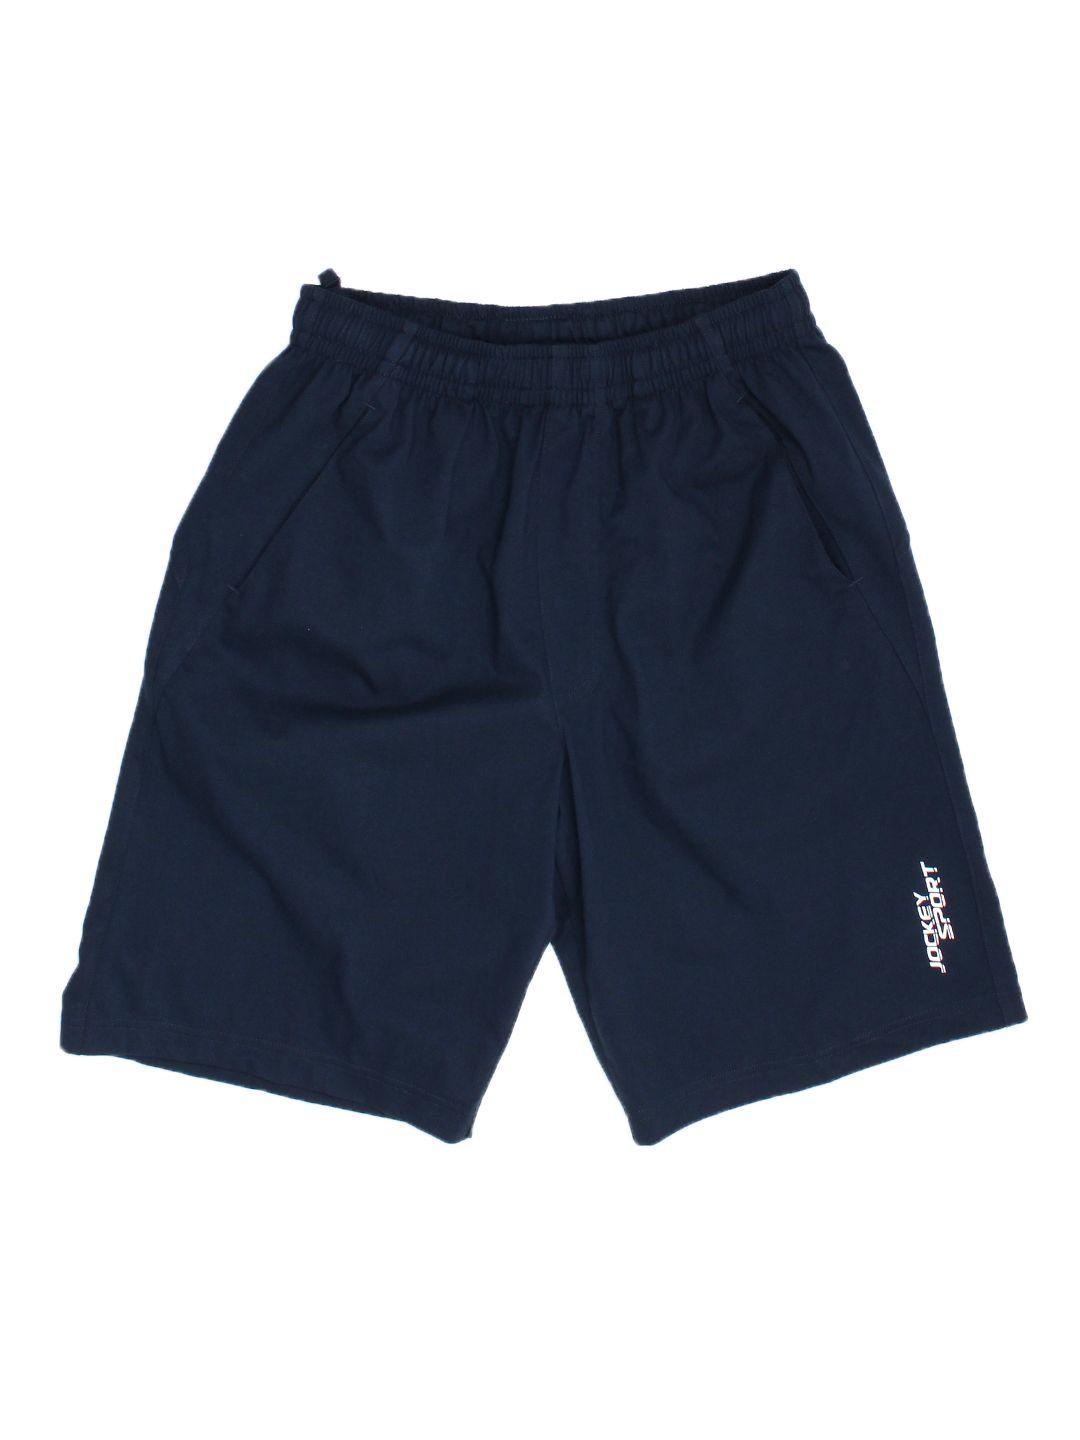 jockey men navy blue solid sport shorts